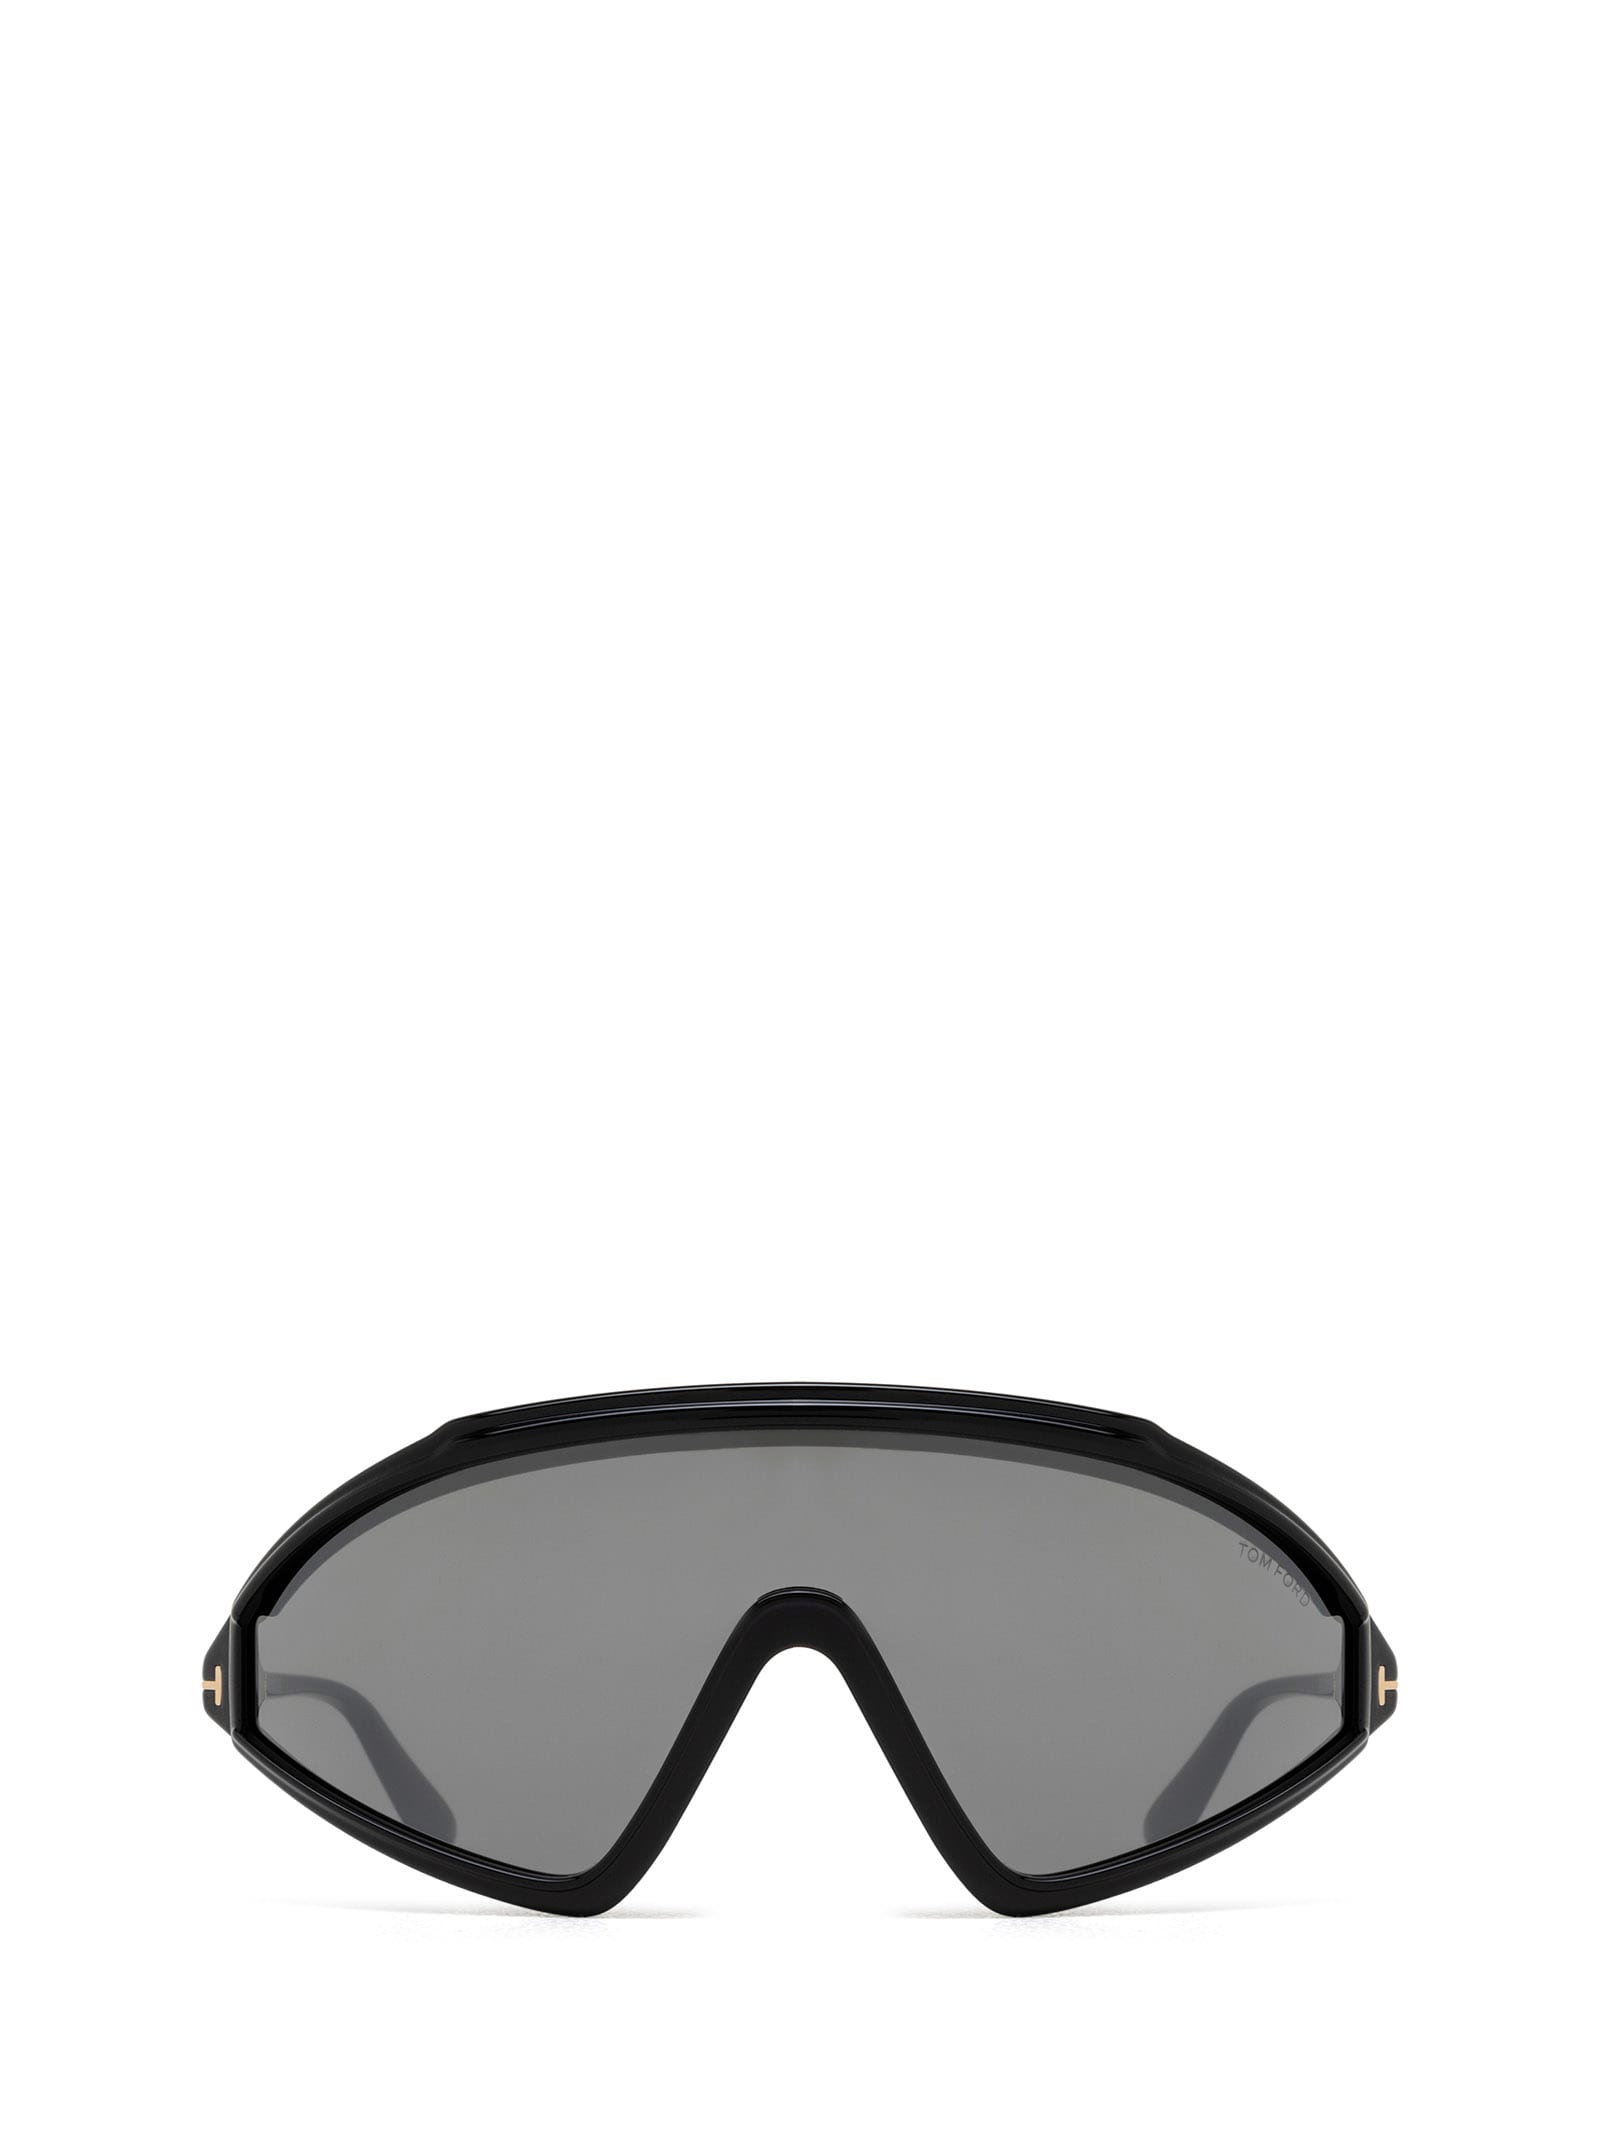 Ft1121 Shiny Black Sunglasses